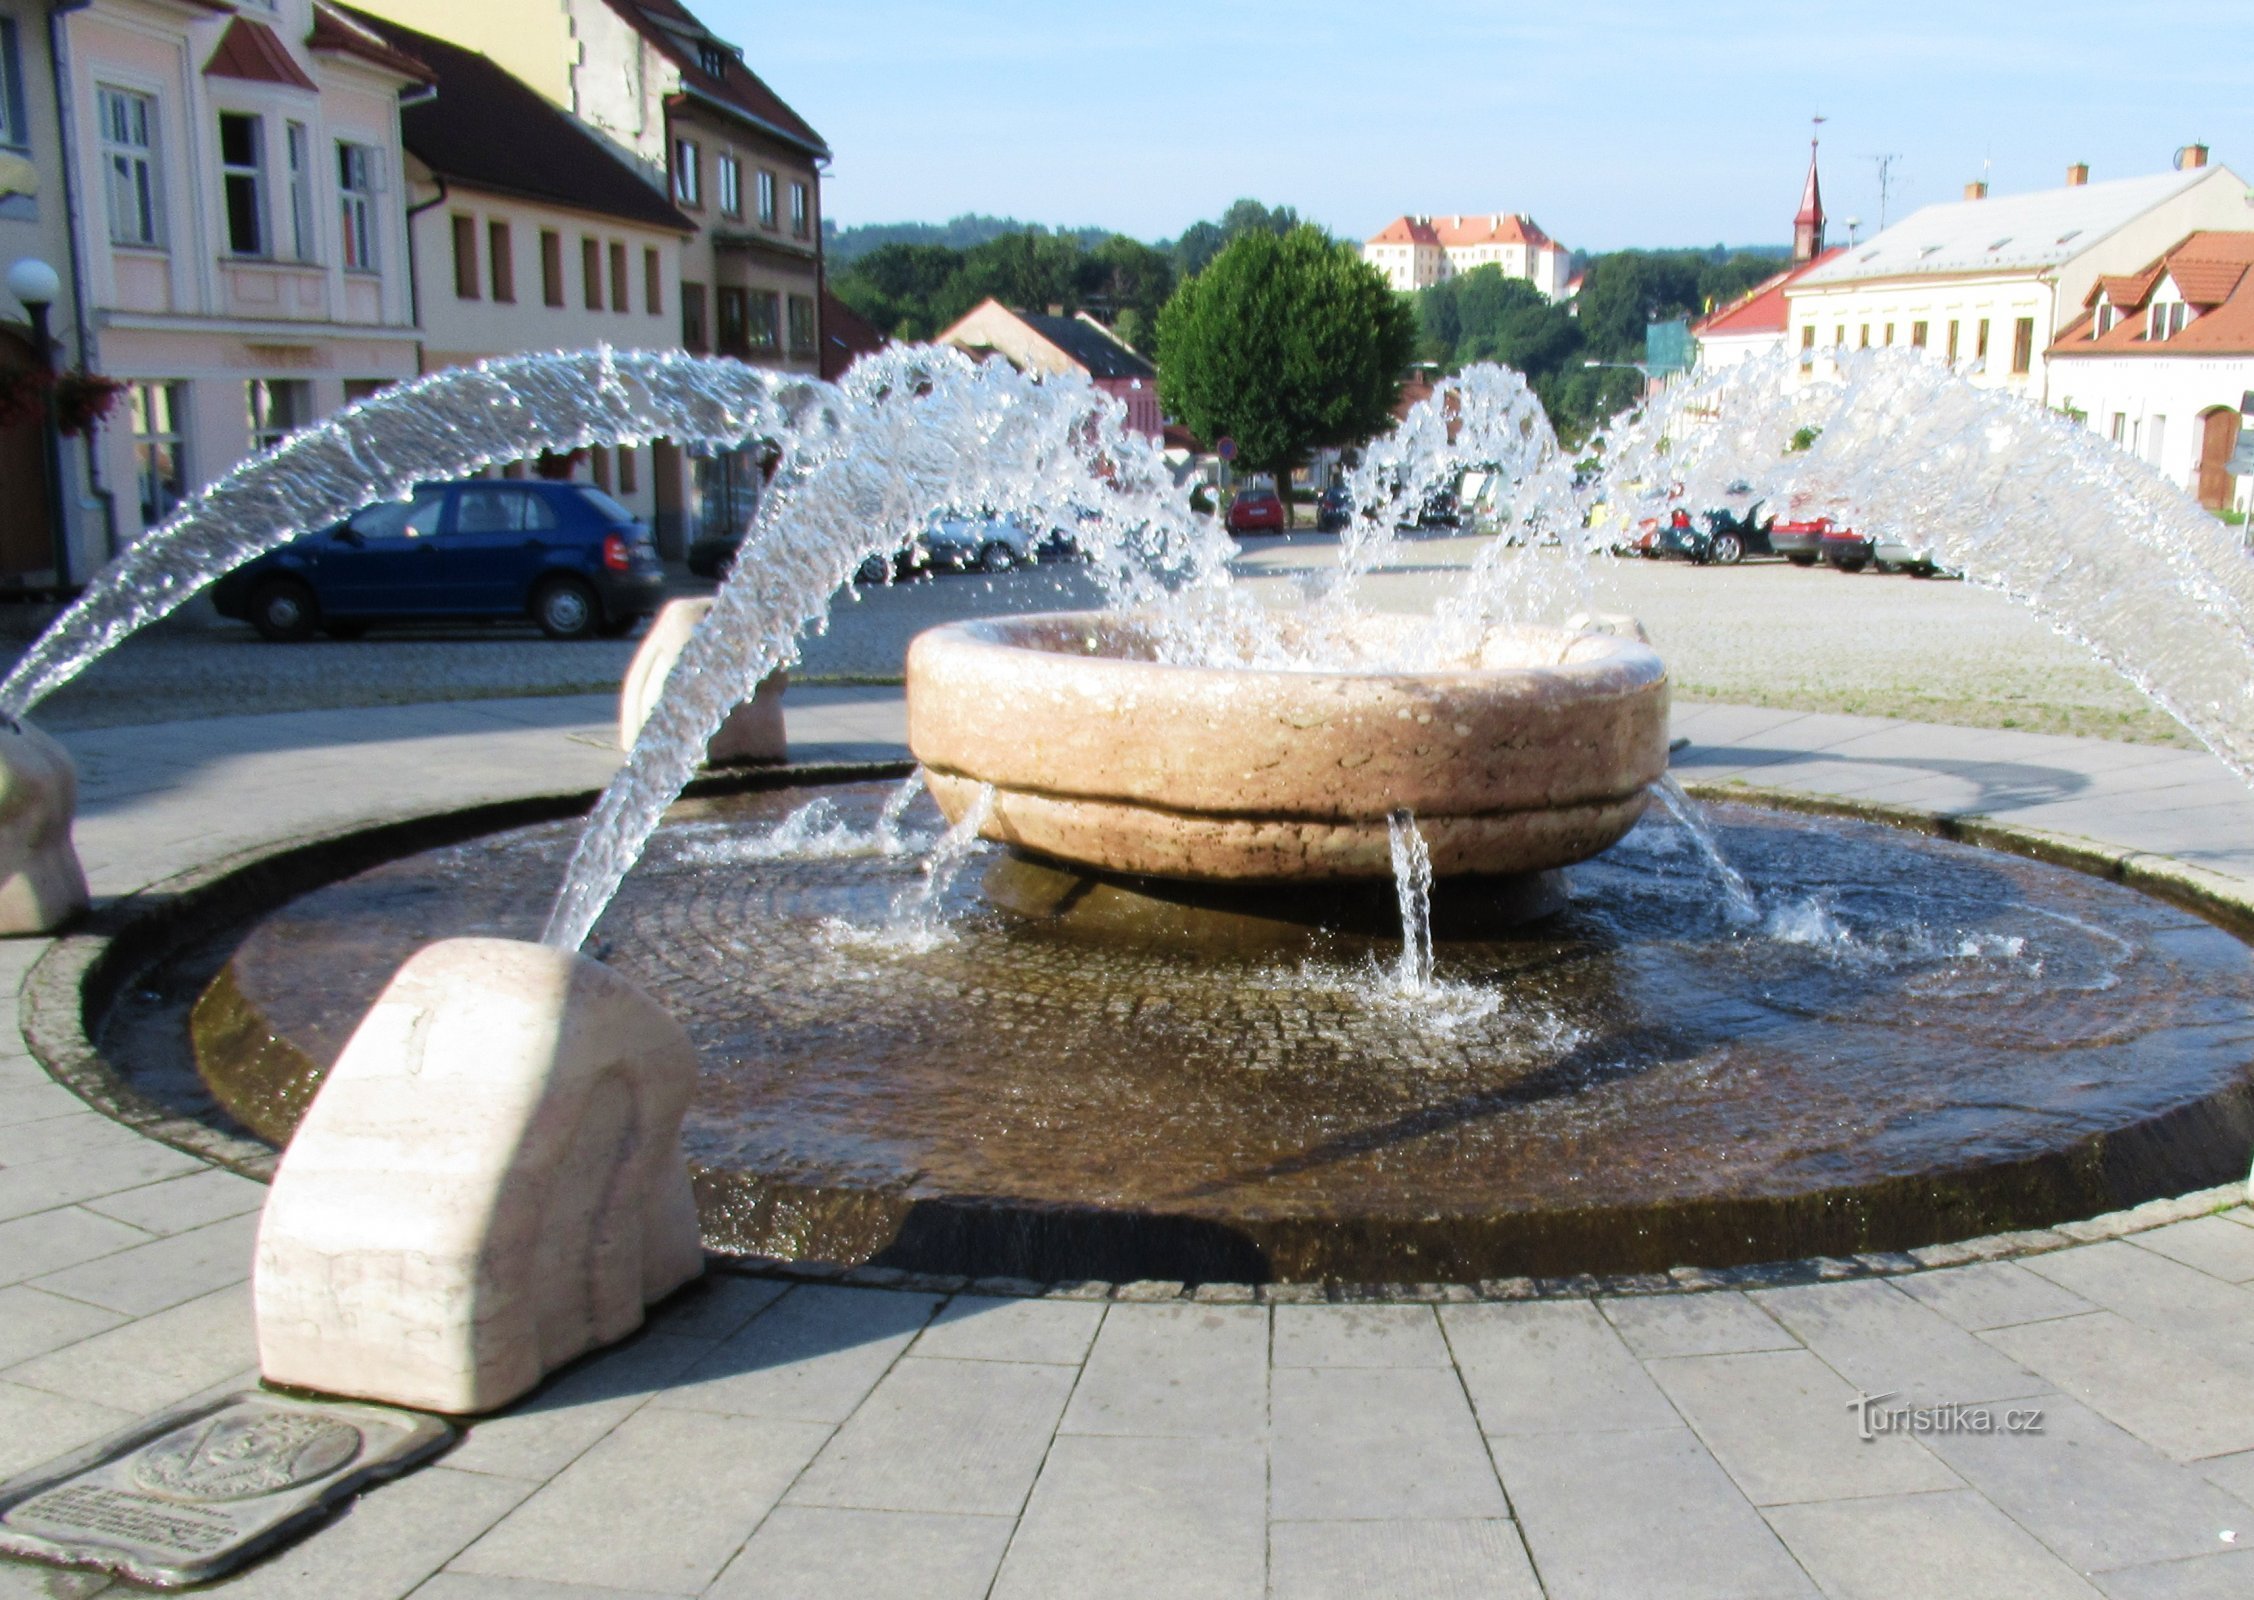 Một đài phun nước độc đáo trên Quảng trường King George ở Kunštát